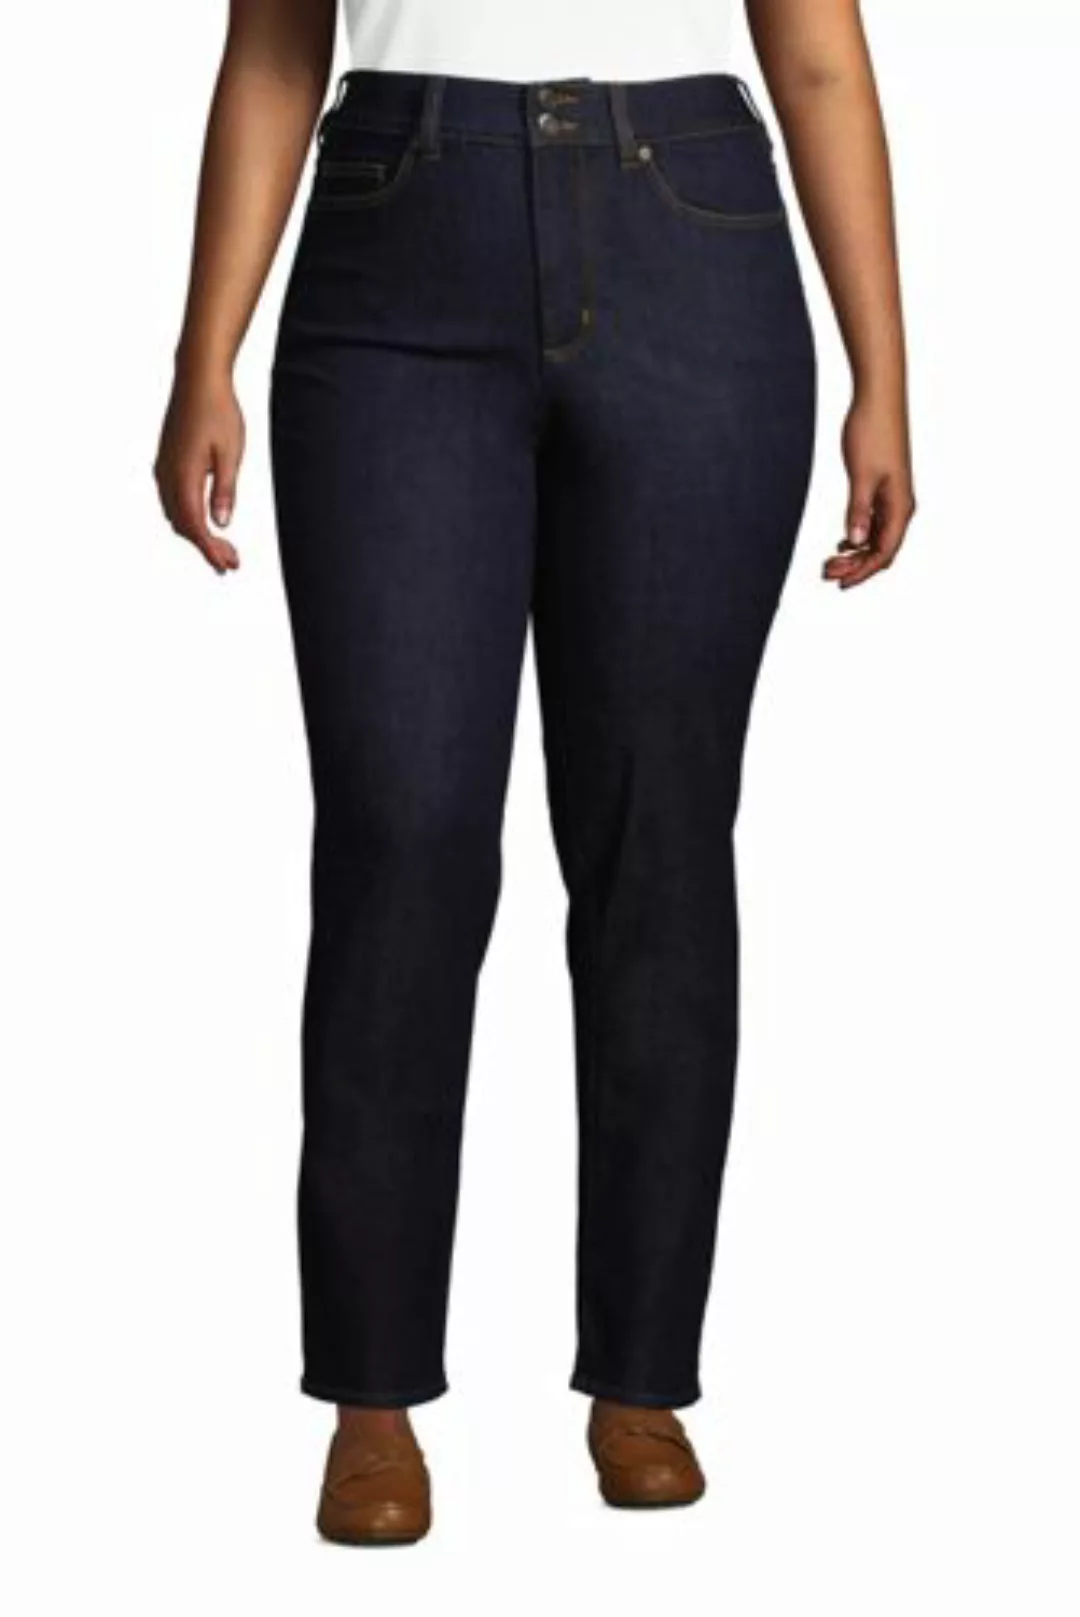 Shaping Jeans Straight Fit High Waist in großen Größen, Damen, Größe: 54 30 günstig online kaufen